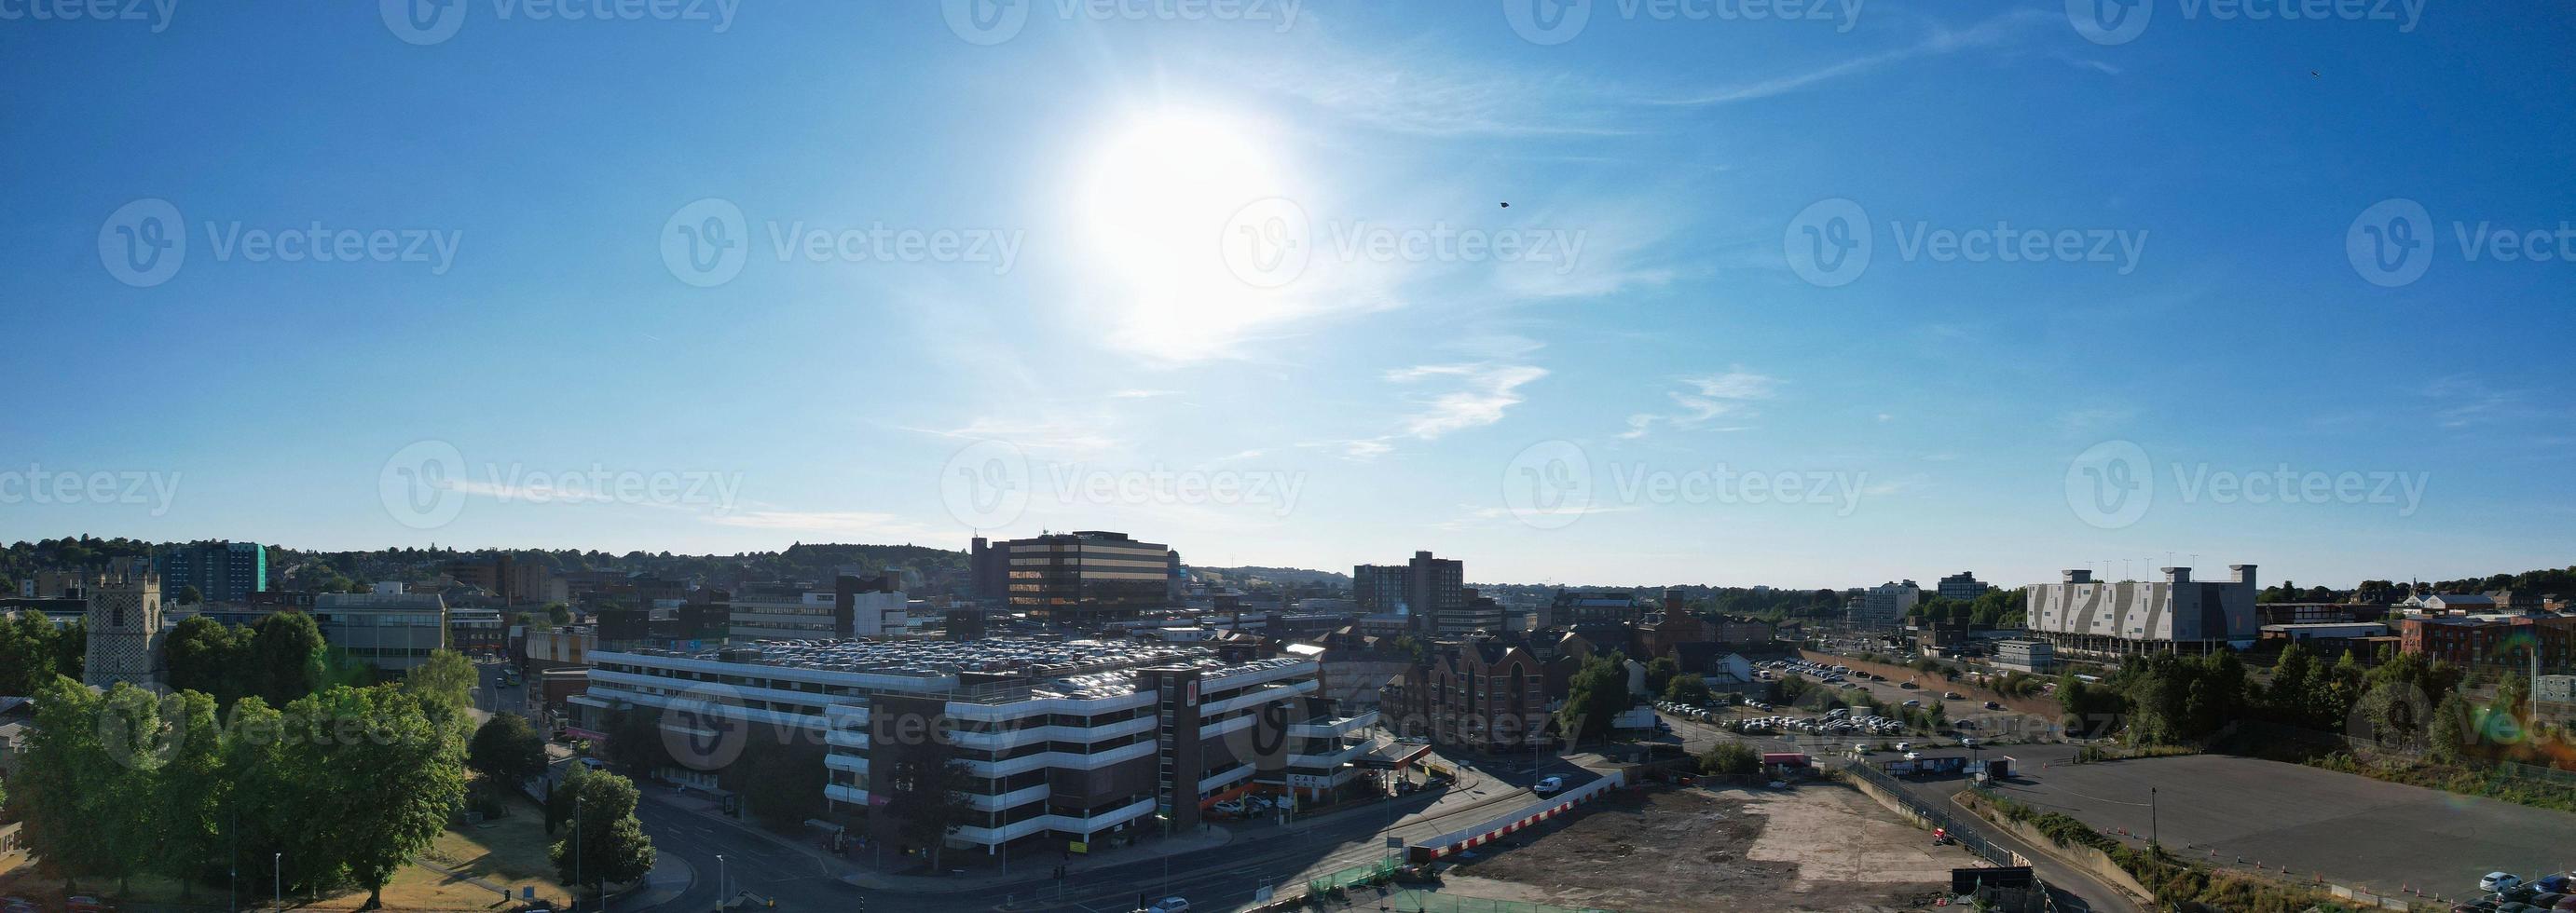 vue de drone à angle élevé sur le centre-ville de luton et la gare, luton en angleterre. luton est une ville et un arrondissement dotés du statut d'autorité unitaire, dans le comté cérémoniel du bedfordshire photo